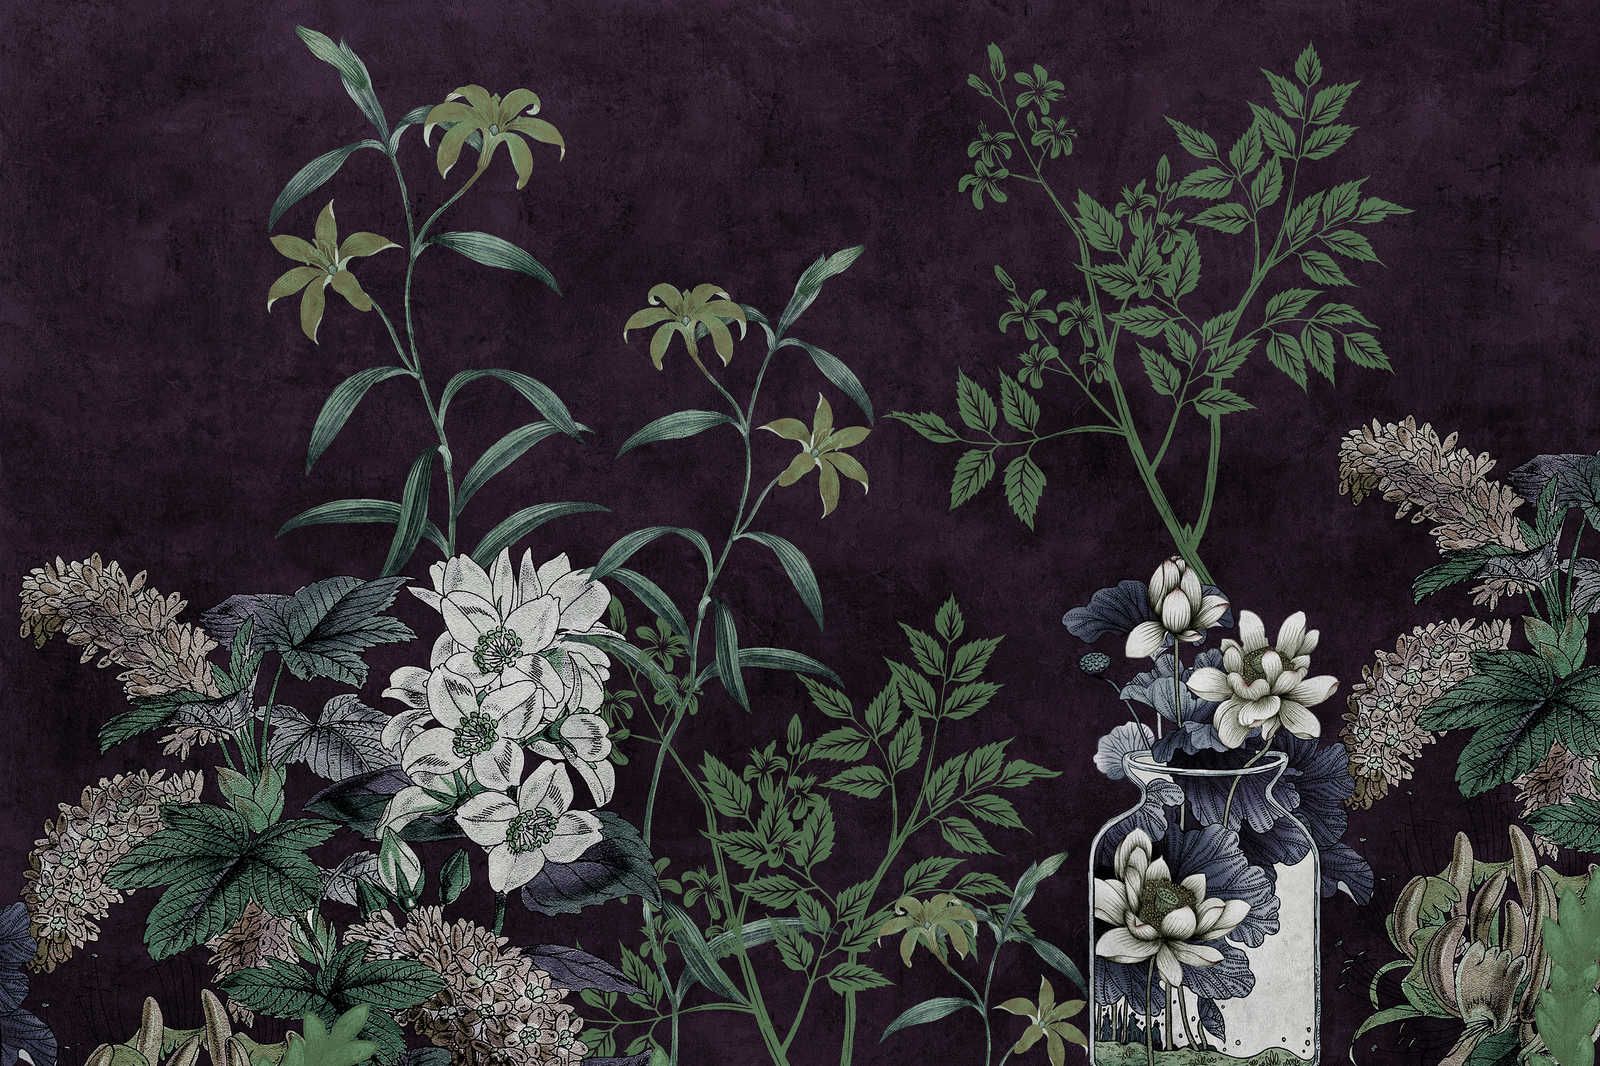             Cuarto Oscuro 1 - Lienzo Negro Pintura Botánica Patrón Verde - 1,20 m x 0,80 m
        